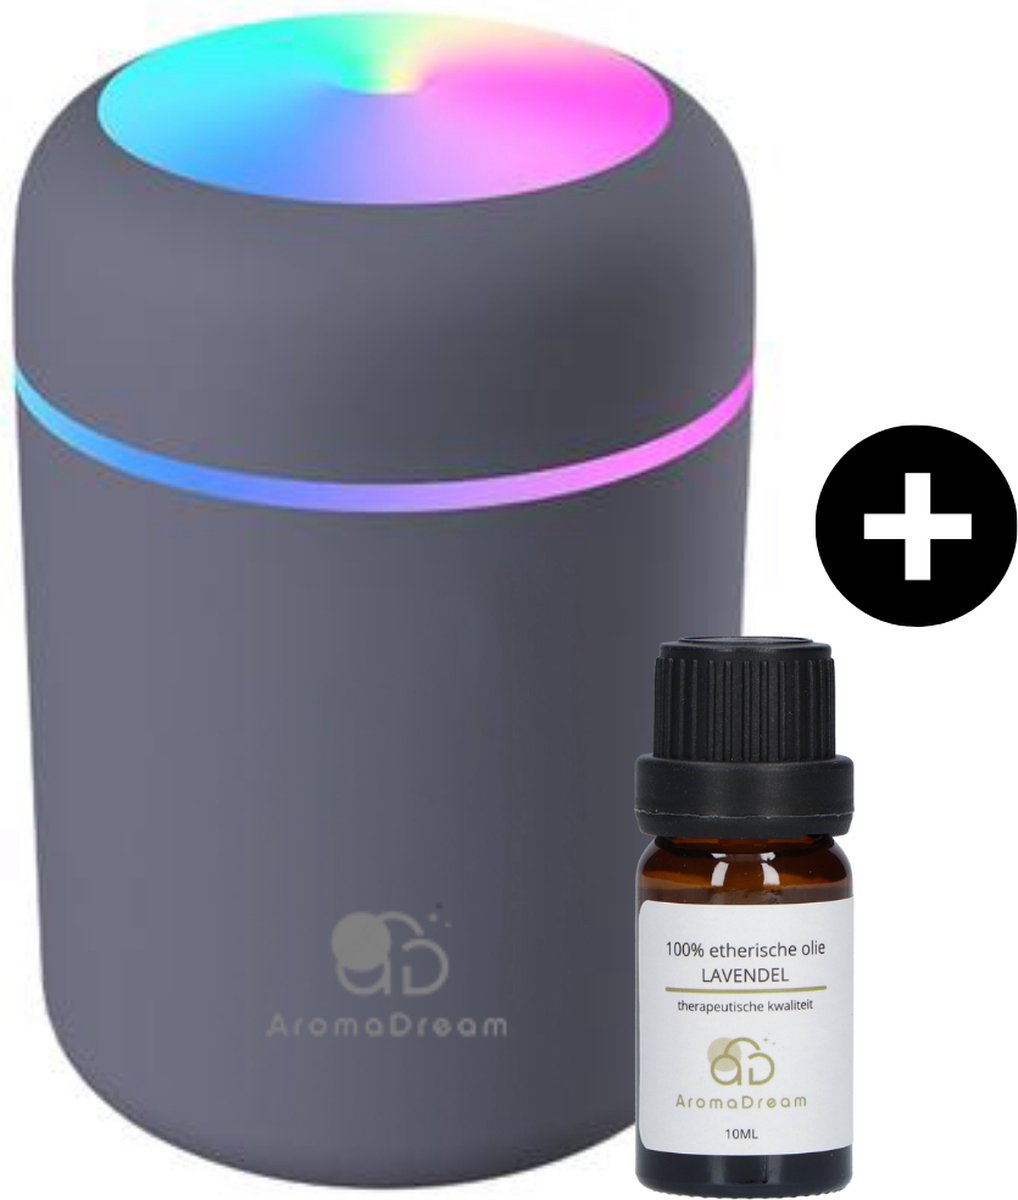 Aroma Dream Diffuser Luchtbevochtiger Grijs 300ML incl. Lavendel Olie en E-book Aromatherapie - Humidifier geschikt voor Etherische en Essentiële Olie - Vernevelaar - Verstuiver - Geurverspreider